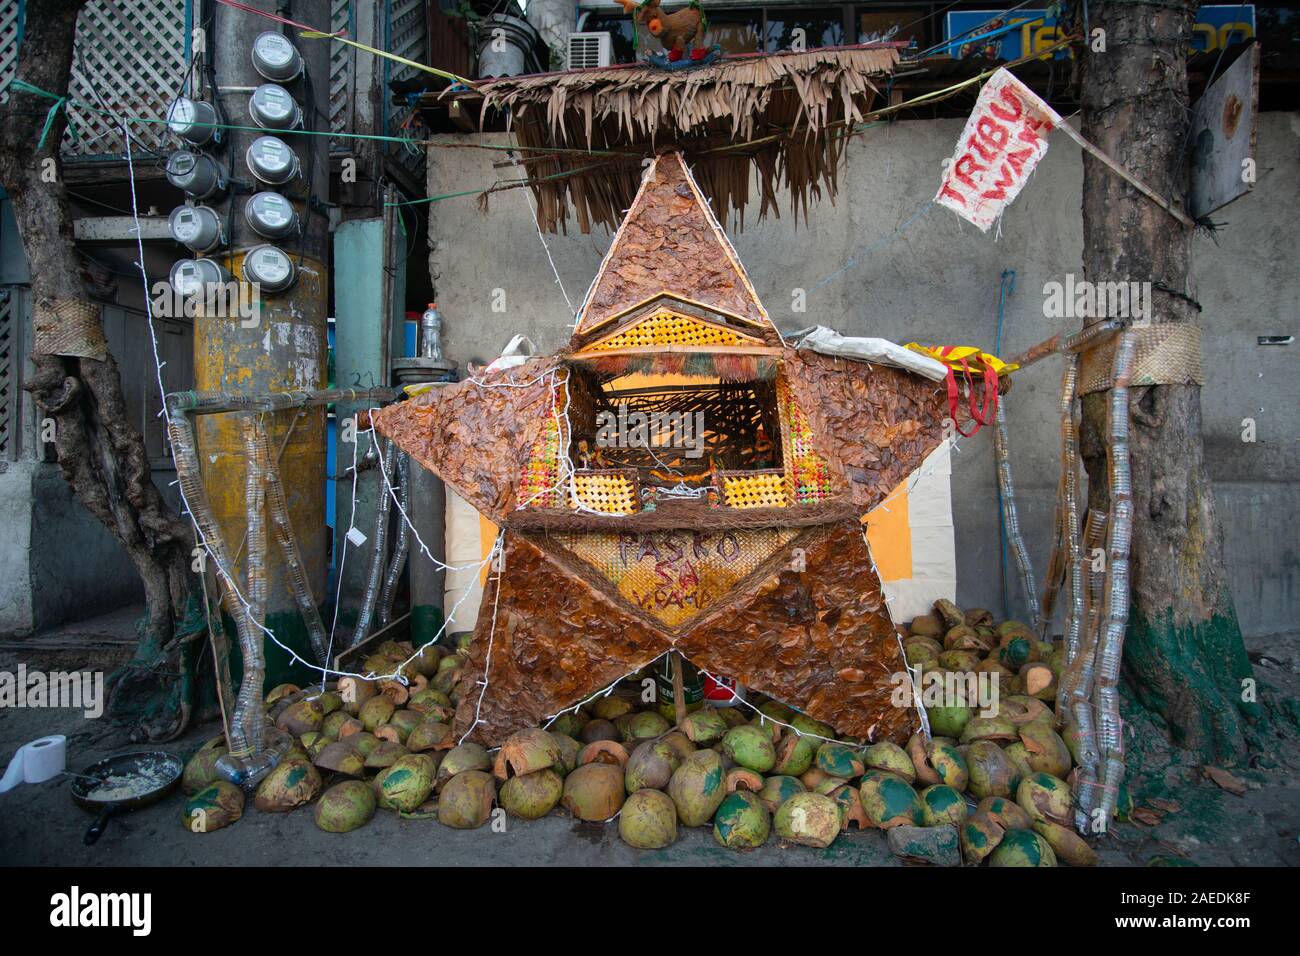 Una decoración de Navidad conocido como Parol incorporando un pesebre hecho de materiales reciclados a lo largo de una acera en una zona pobre de la ciudad de Cebu, Filipinas Foto de stock